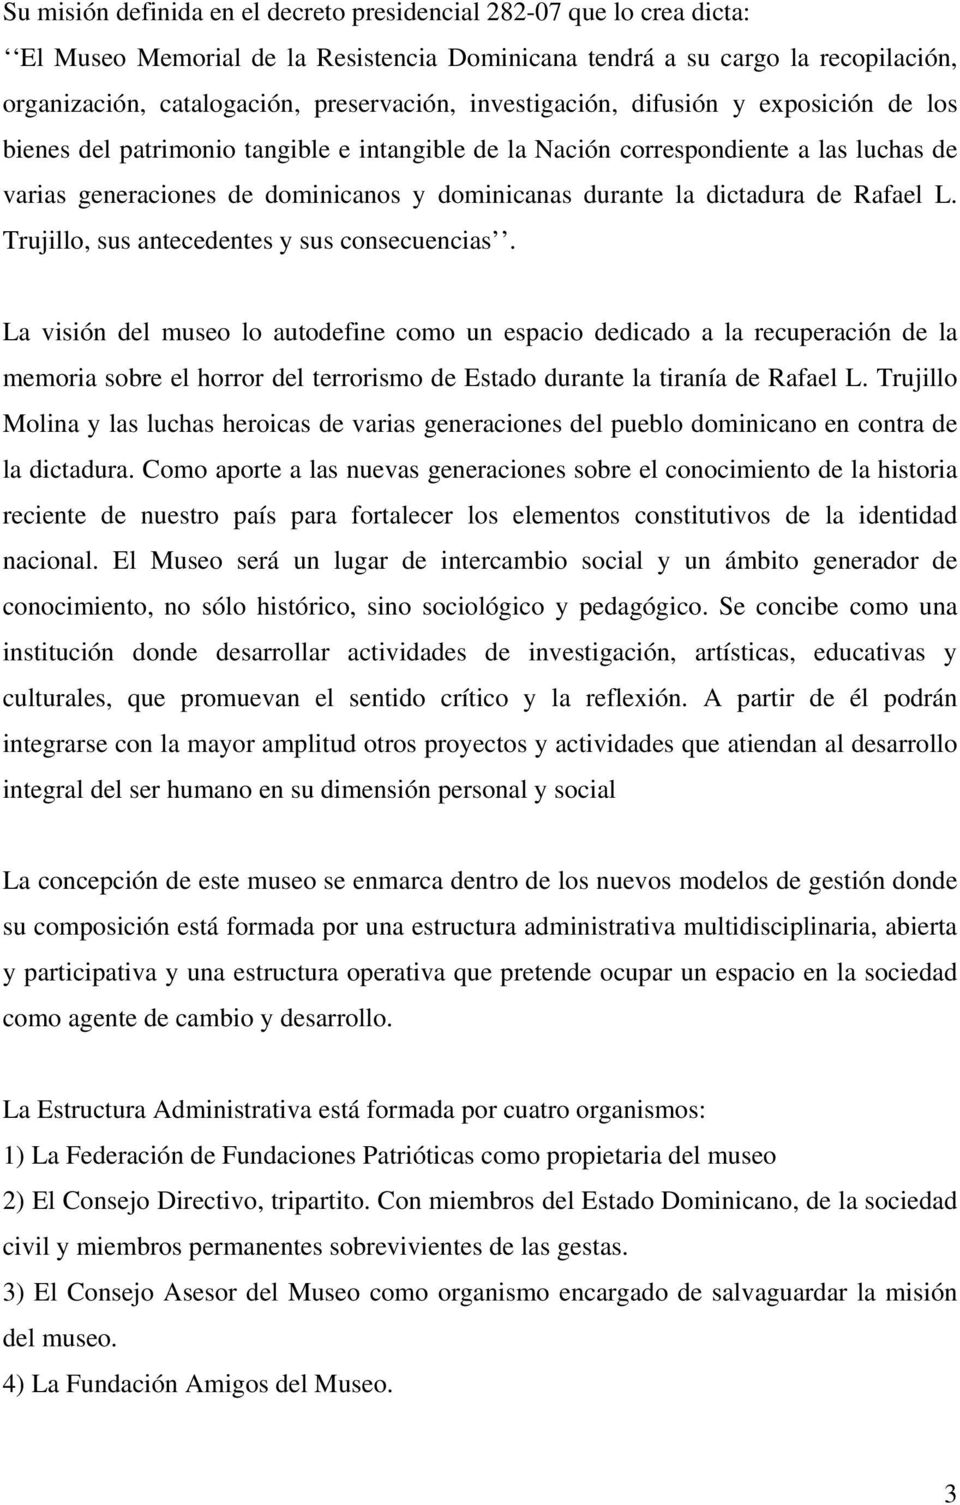 dictadura de Rafael L. Trujillo, sus antecedentes y sus consecuencias.